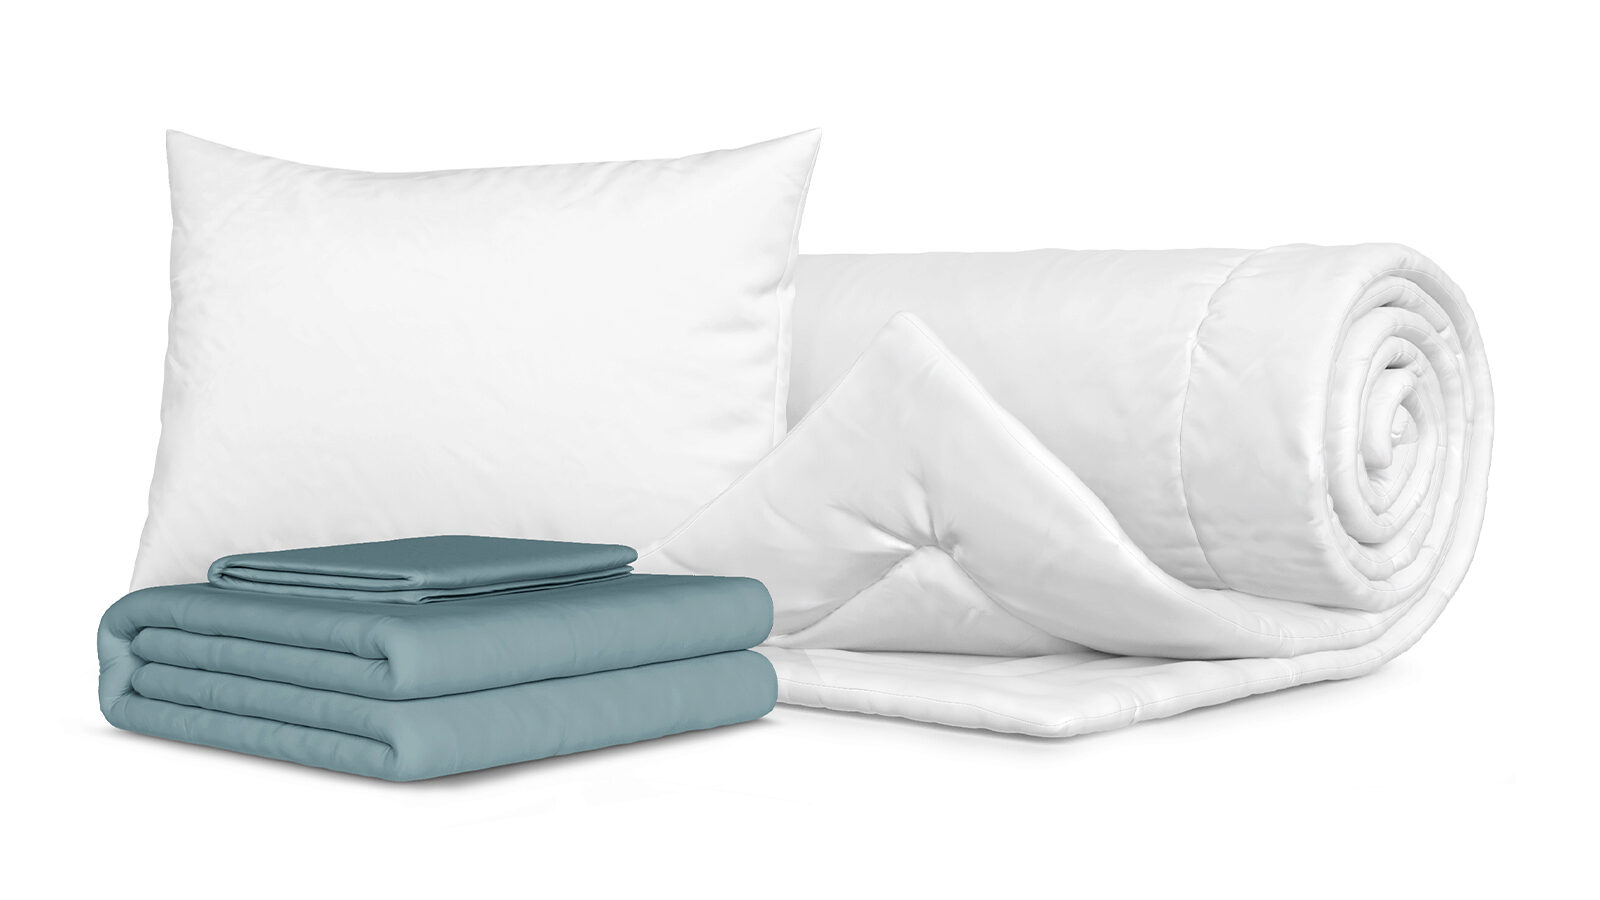 Комплект Одеяло Beat + Подушка Sky + Комплект постельного белья Comfort Cotton, цвет: Серо-голубой голубой лотос